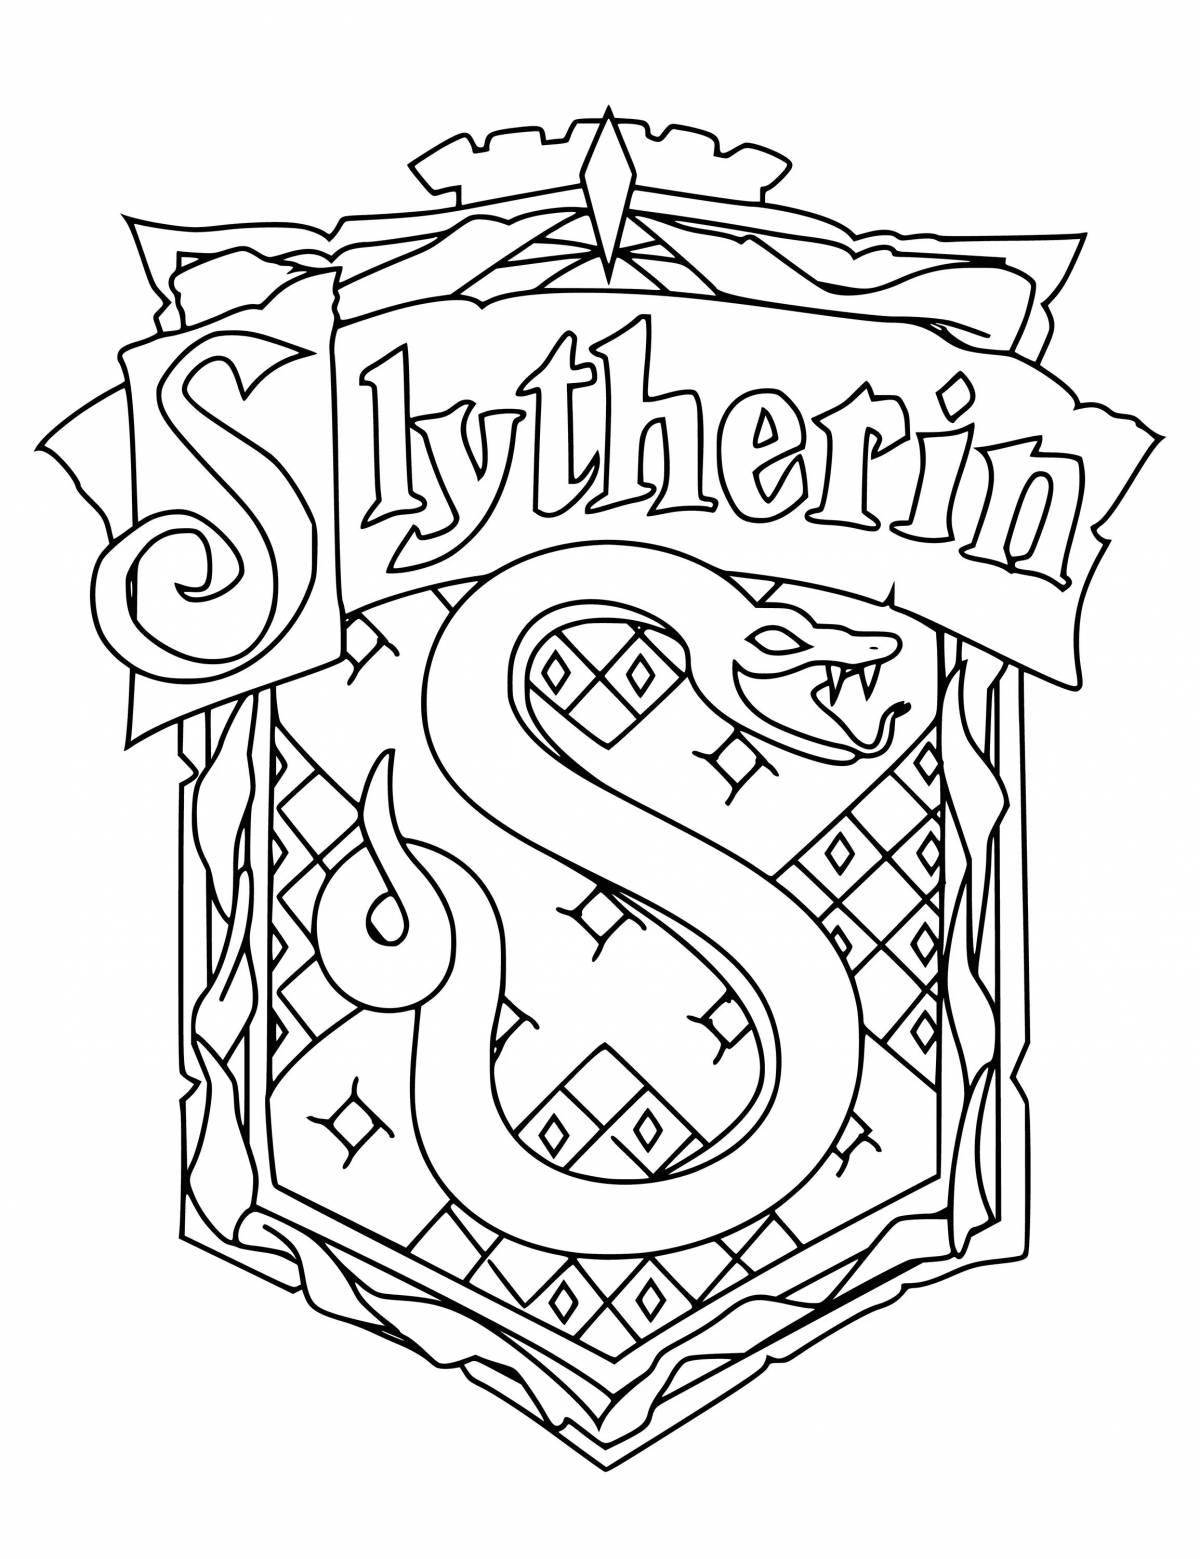 Slytherin #4